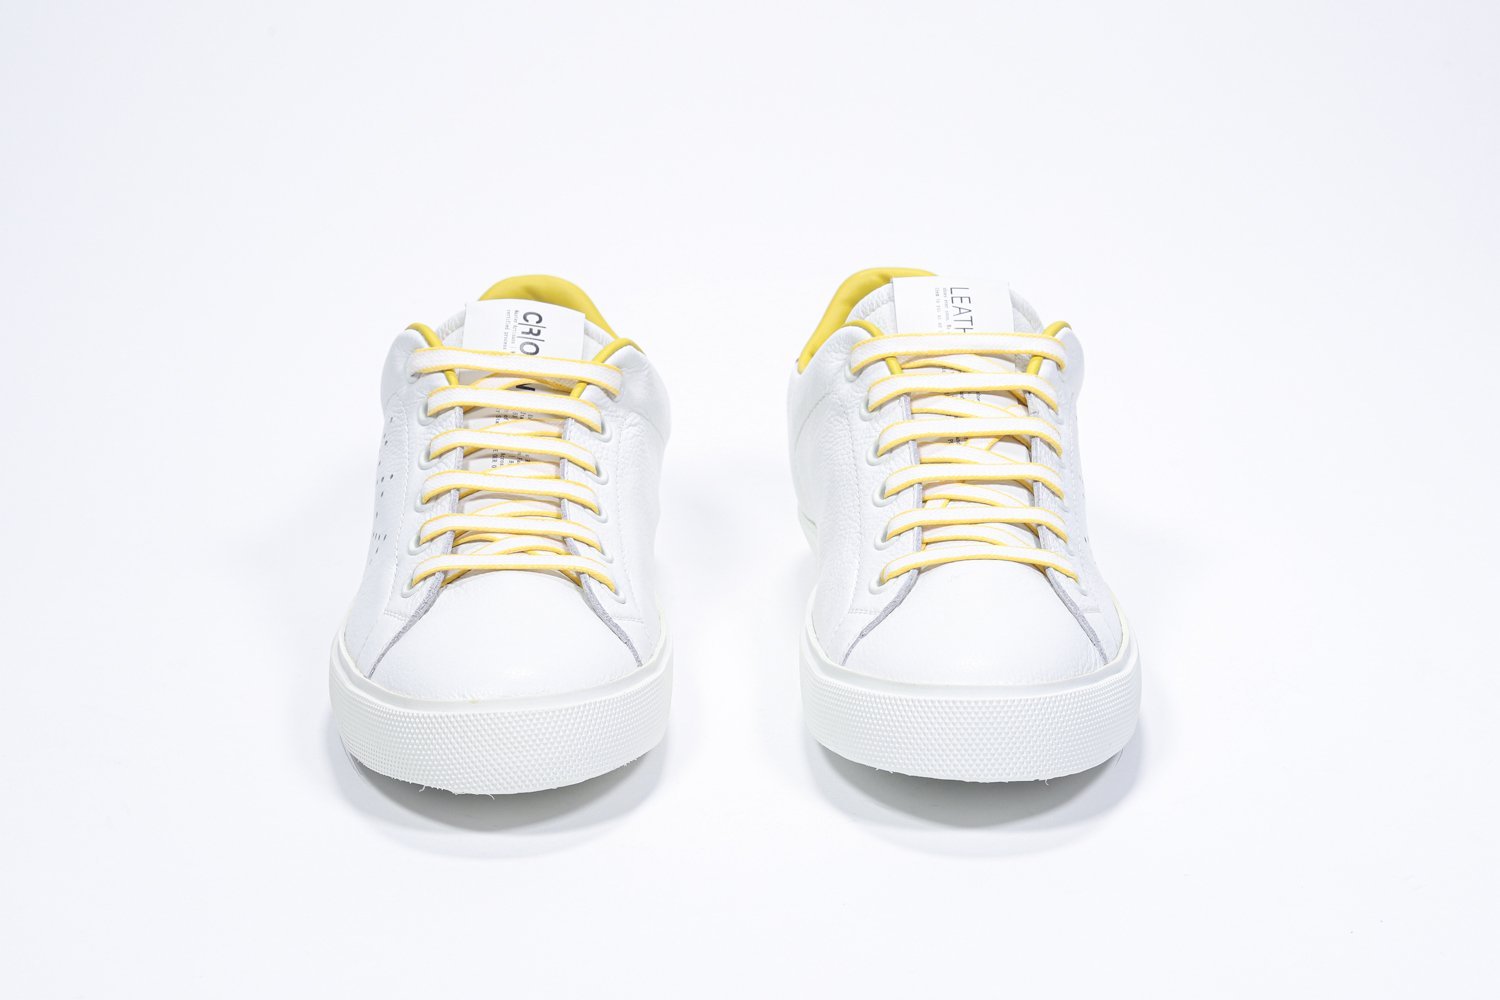 Vorderansicht des weißen Low Top sneaker mit gelben Details und perforiertem Kronenlogo auf dem Obermaterial. Obermaterial aus Vollleder und weiße Gummisohle.